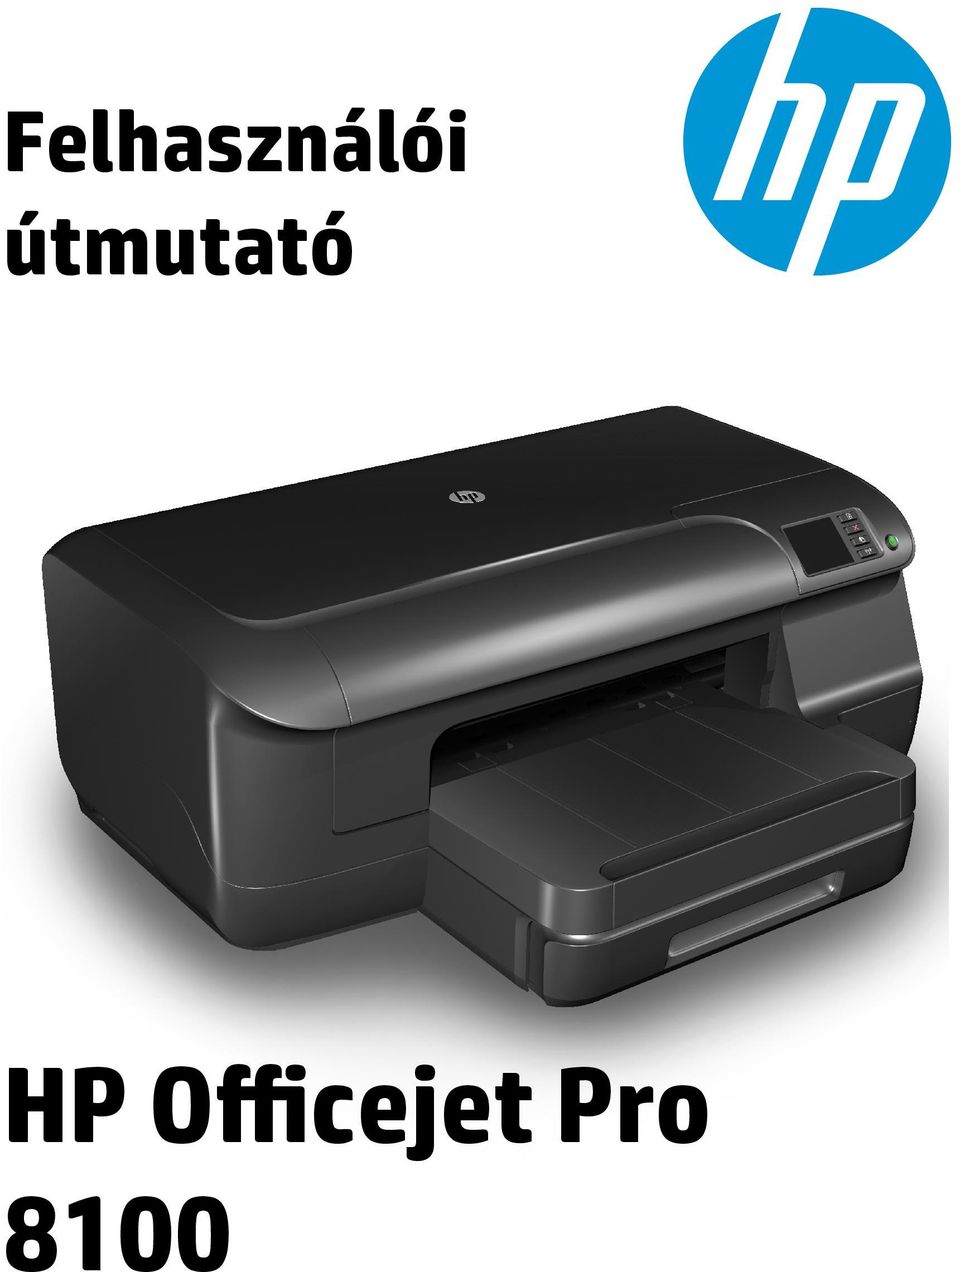 Felhasználói útmutató. HP Oﬃcejet Pro PDF Ingyenes letöltés